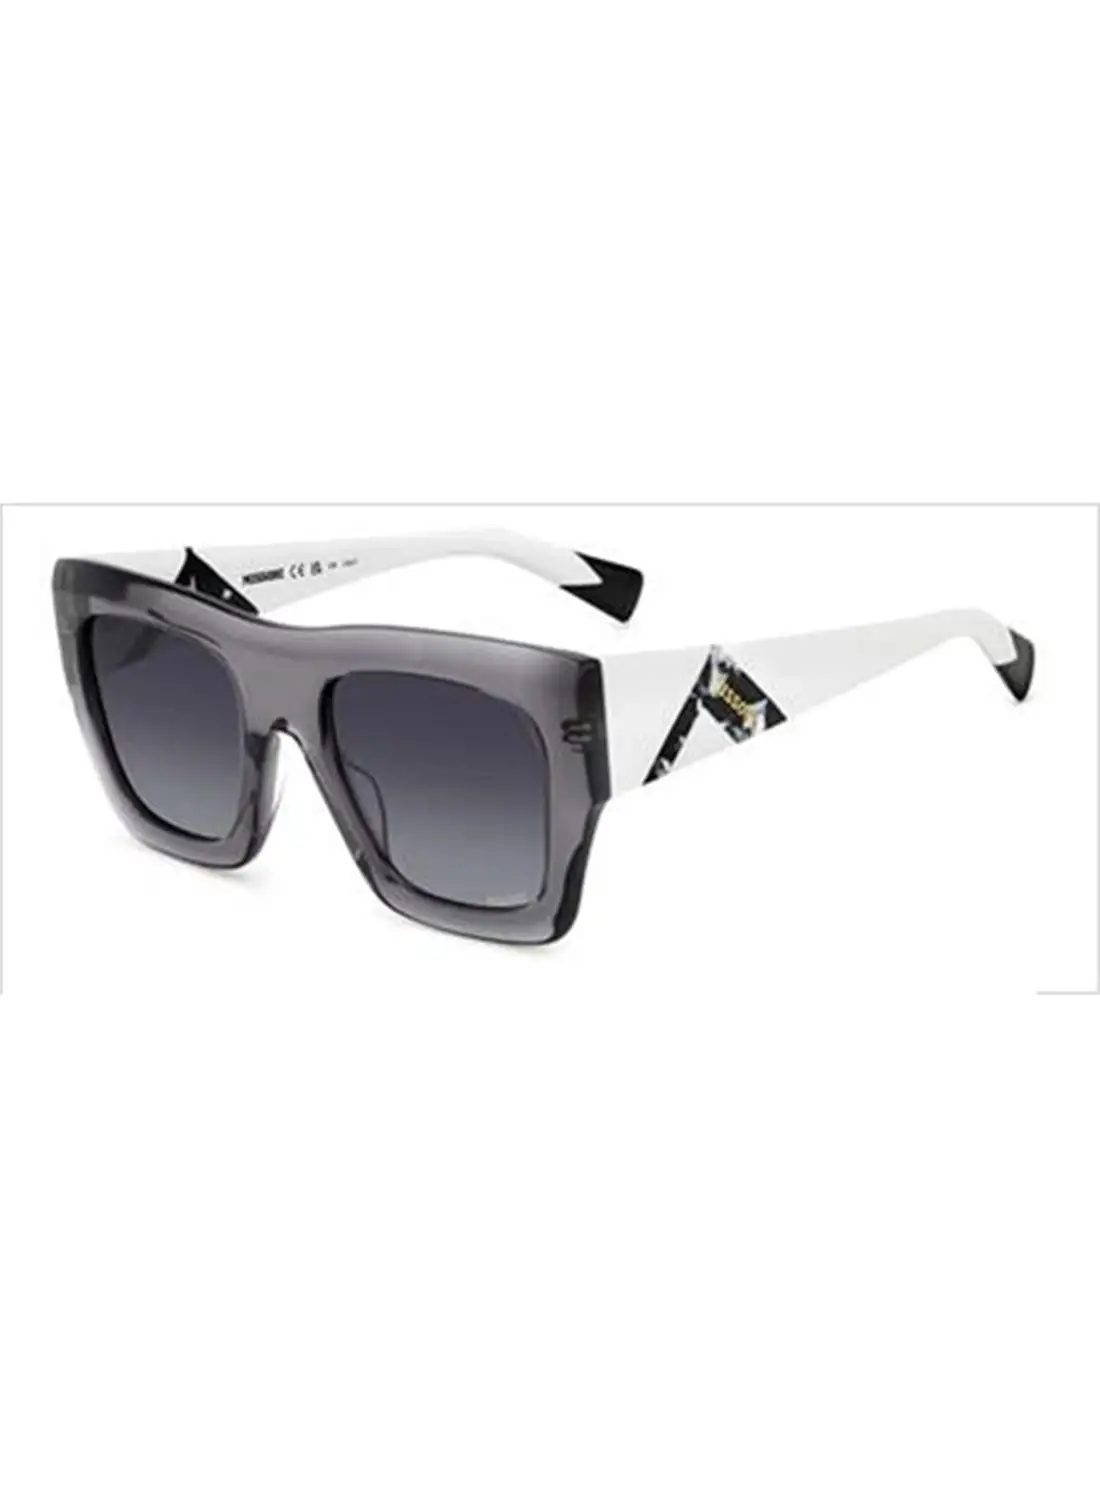 ميسوني نظارة شمسية مستطيلة للحماية من الأشعة فوق البنفسجية للنساء - Mis 0153/S Gray 22 - مقاس العدسة: 44.3 ملم